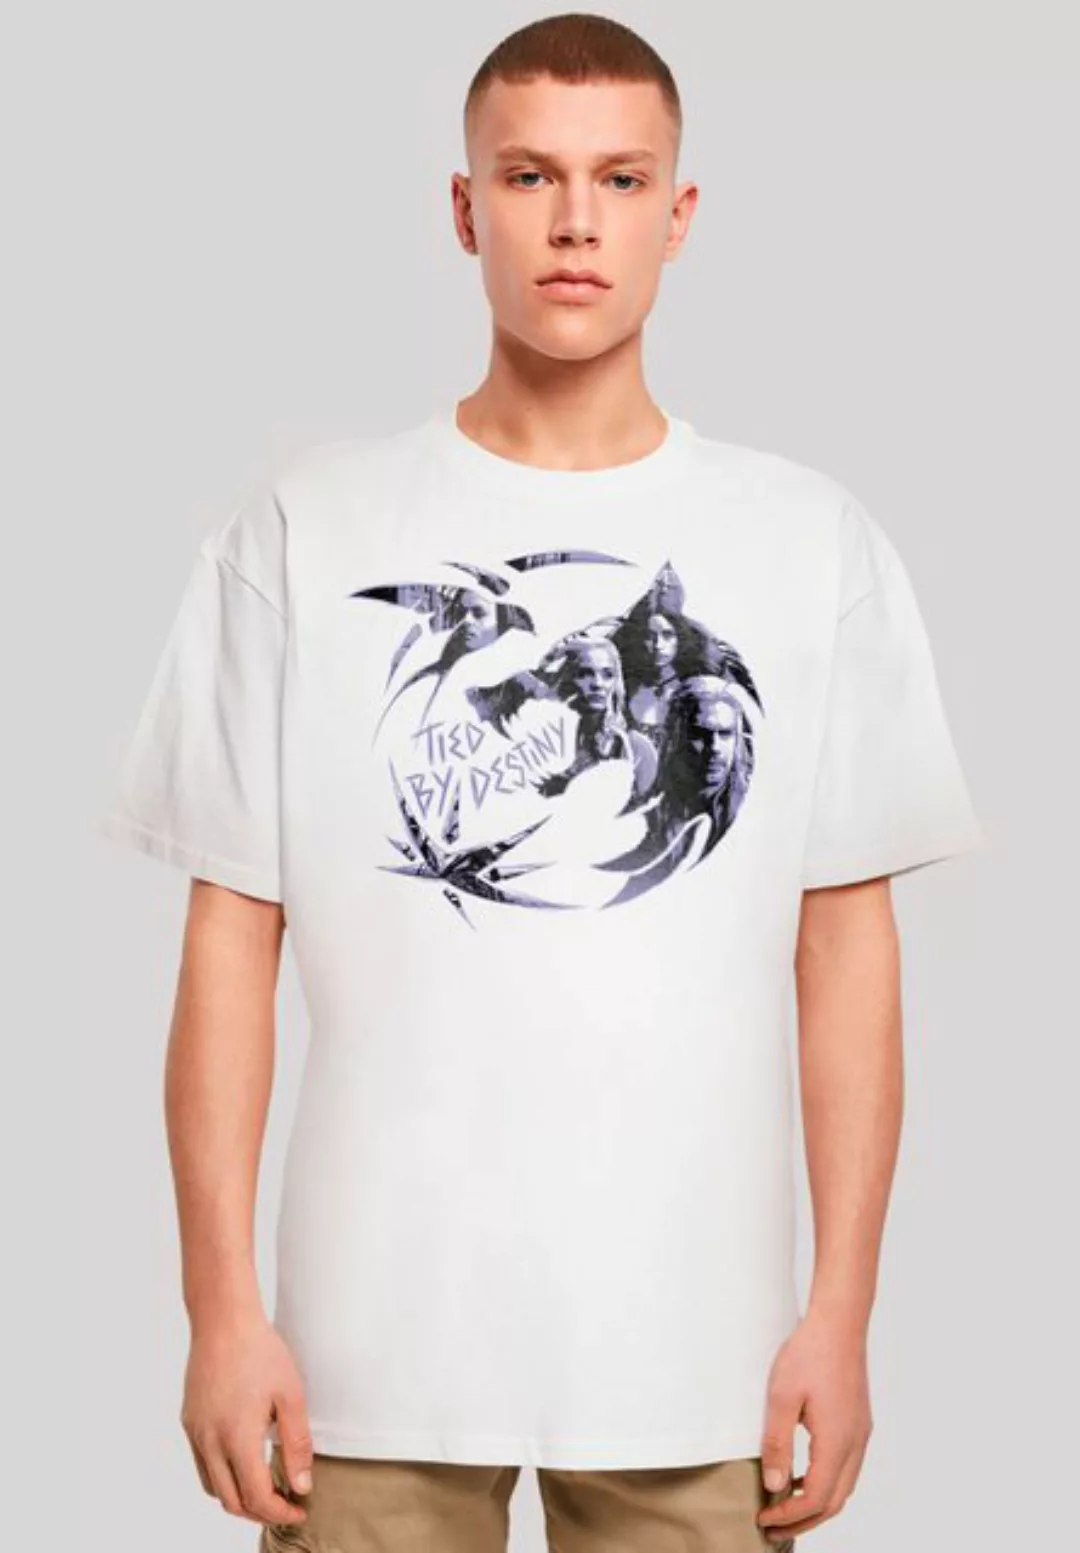 F4NT4STIC T-Shirt The Witcher Wolf Logo Premium Qualität günstig online kaufen